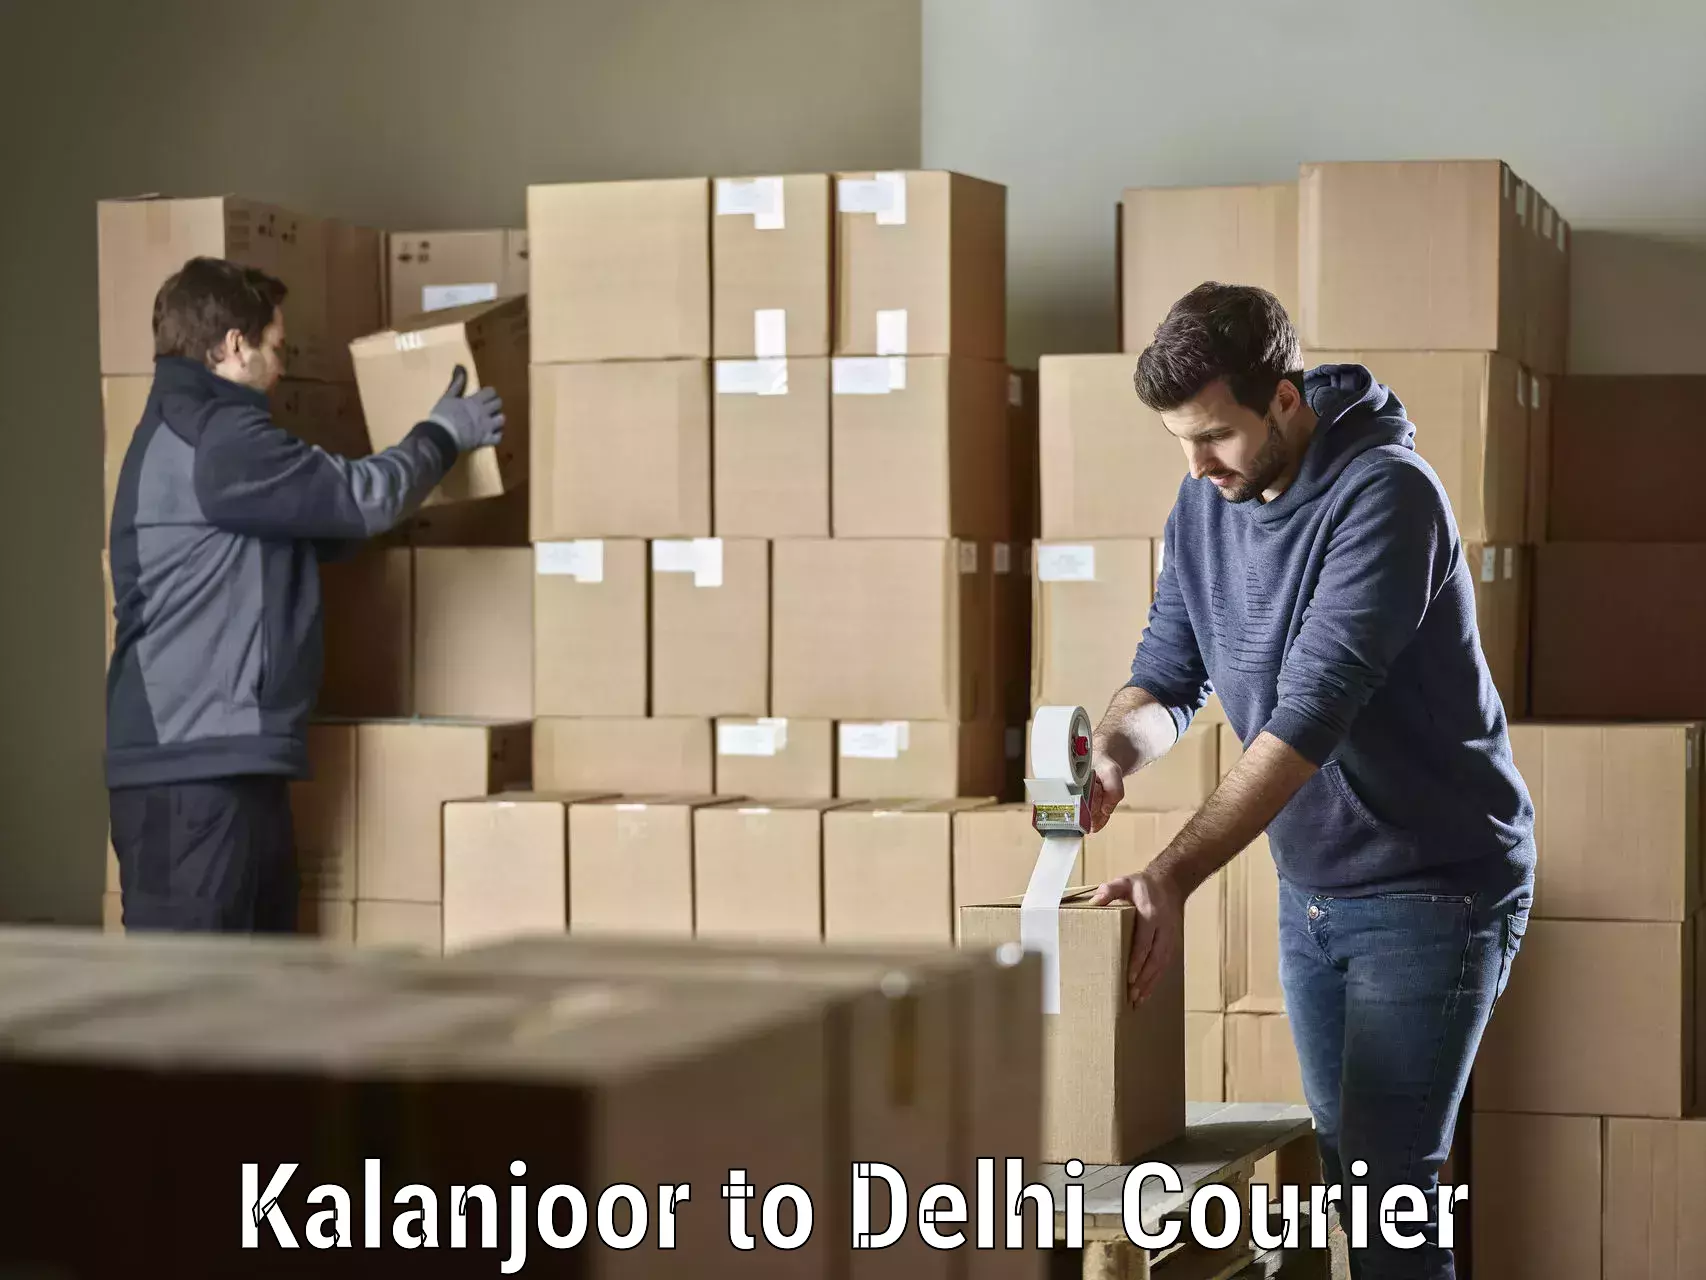 Local delivery service Kalanjoor to Delhi